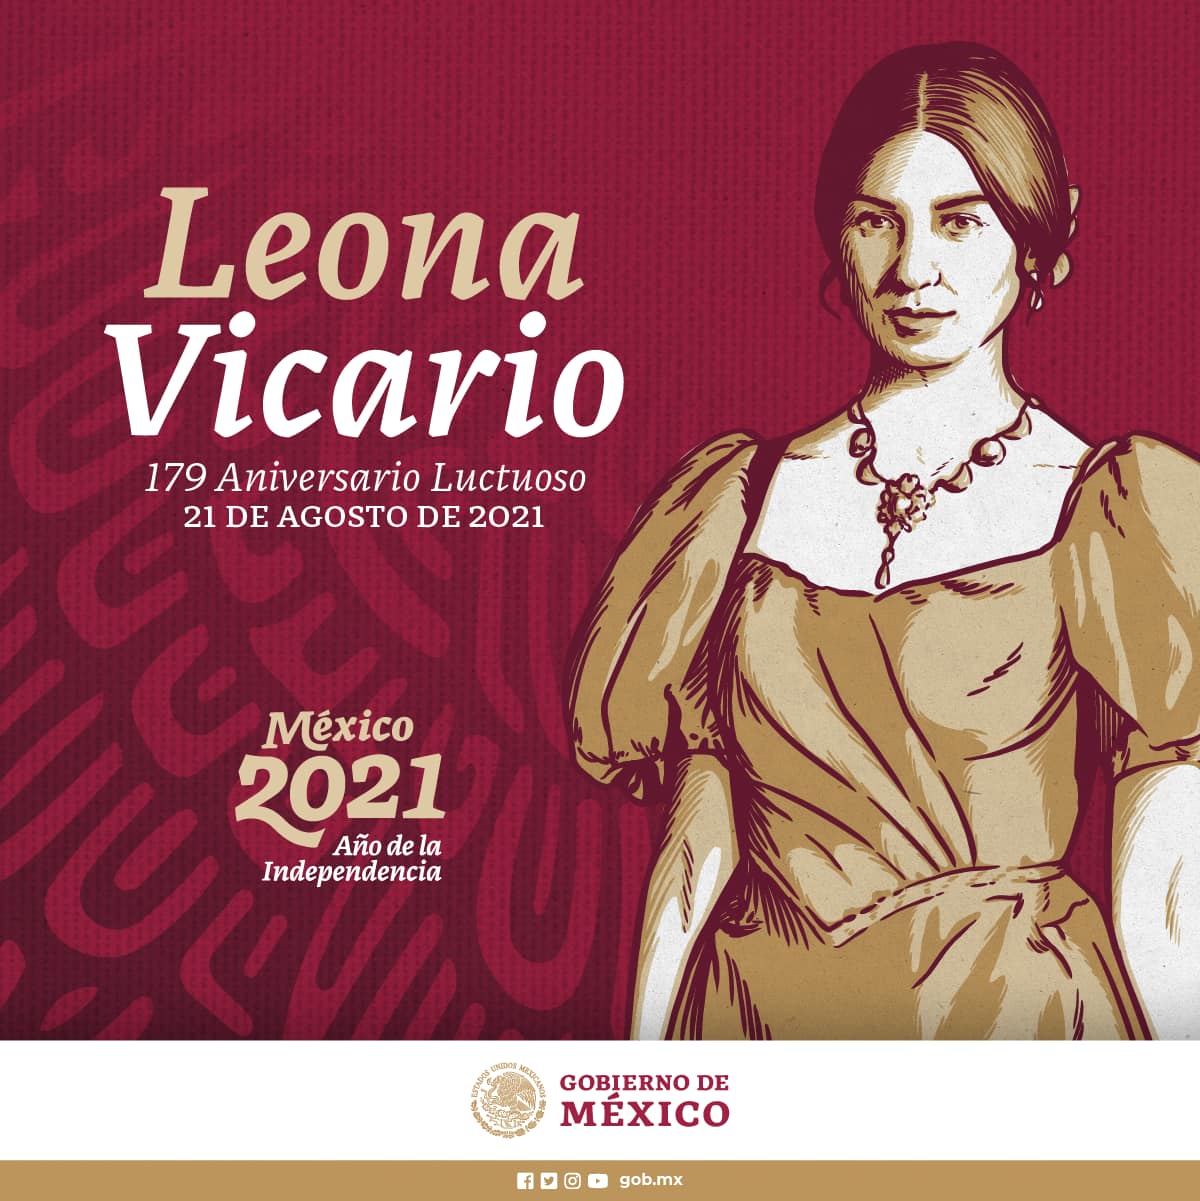 Hoy es el 179 aniversario luctuoso de Leona Vicario.